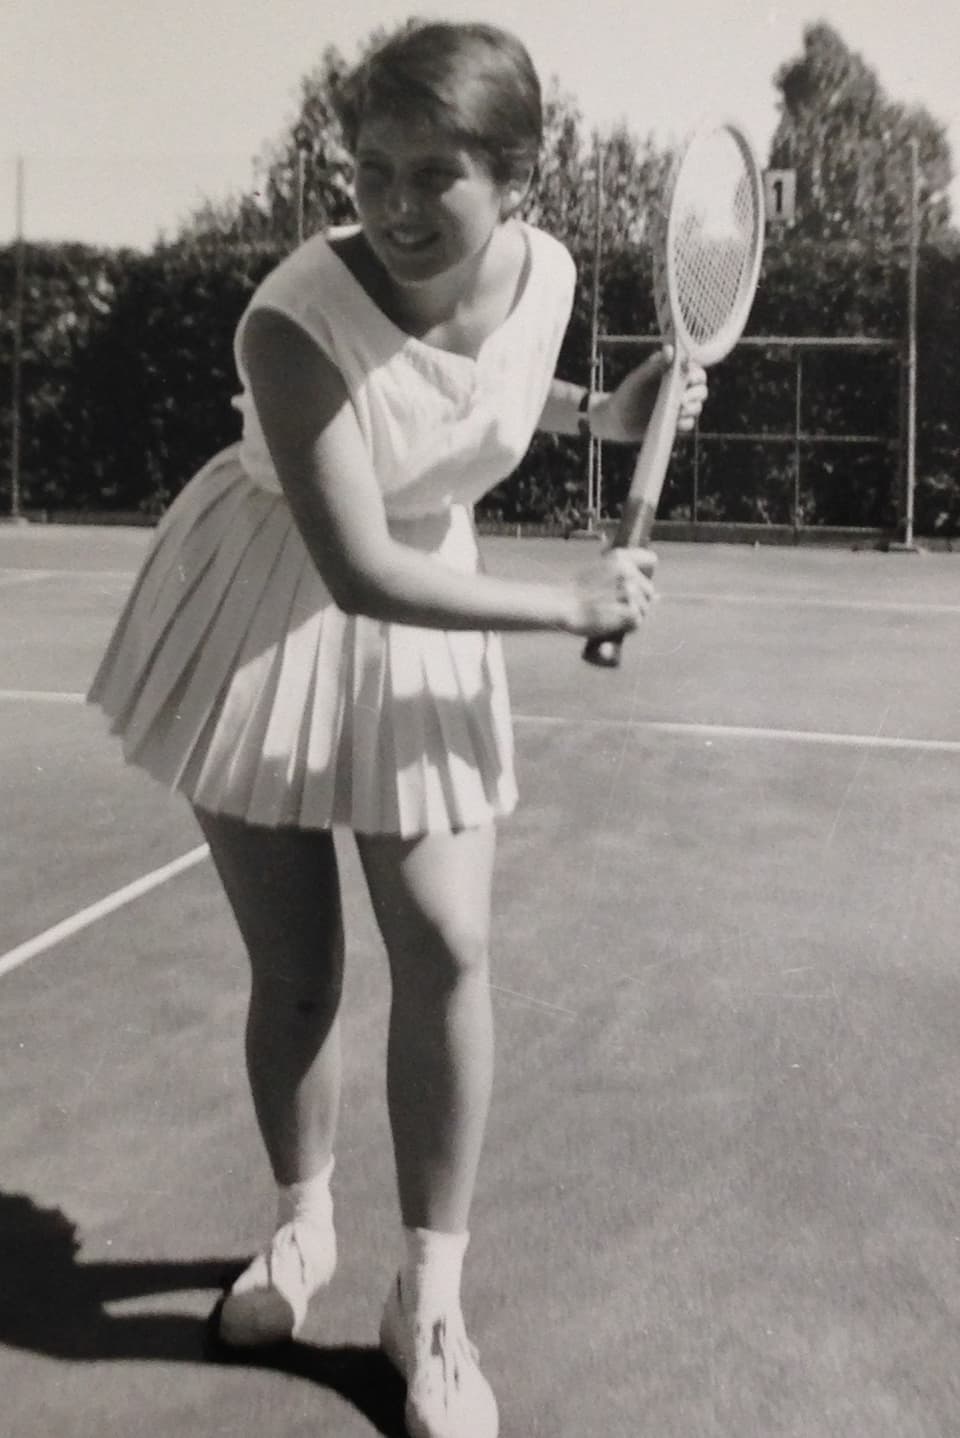 Eine junge Frau schwingt das Racket auf dem Tennisplatz.